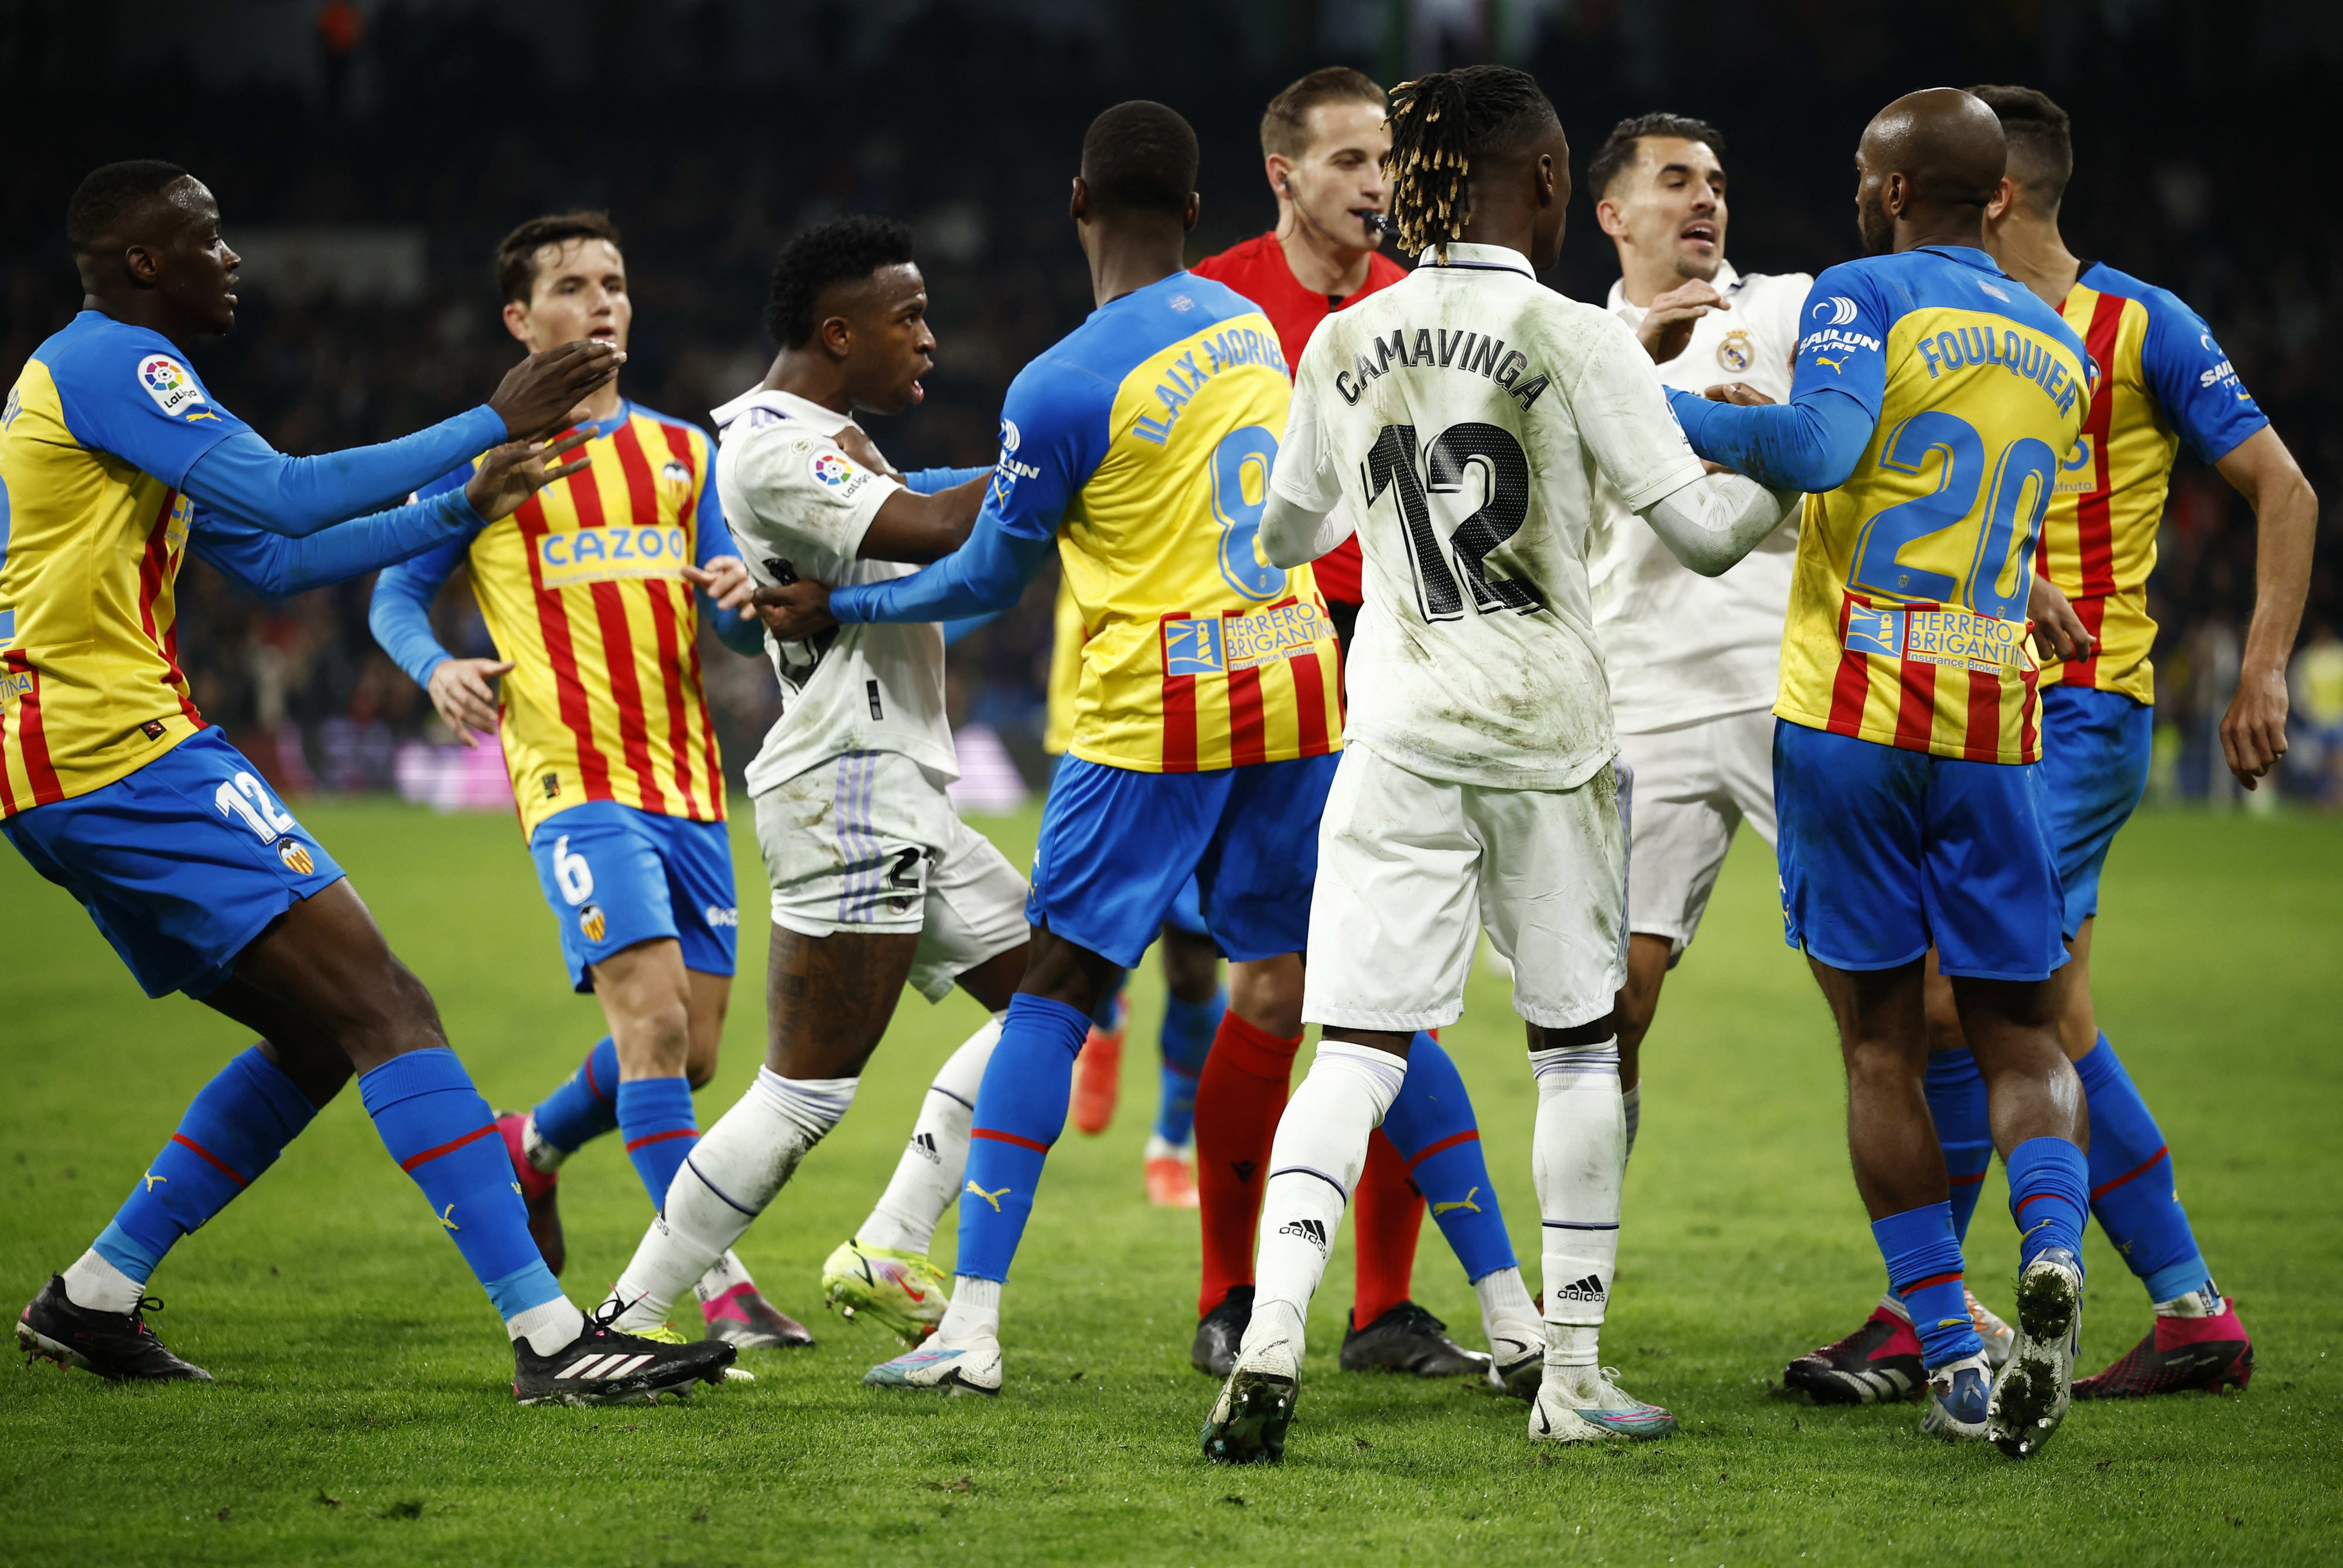 עימות בין שחקני ולנסיה לשחקני ריאל מדריד אחרי העבירה הגסה על ויניסיוס